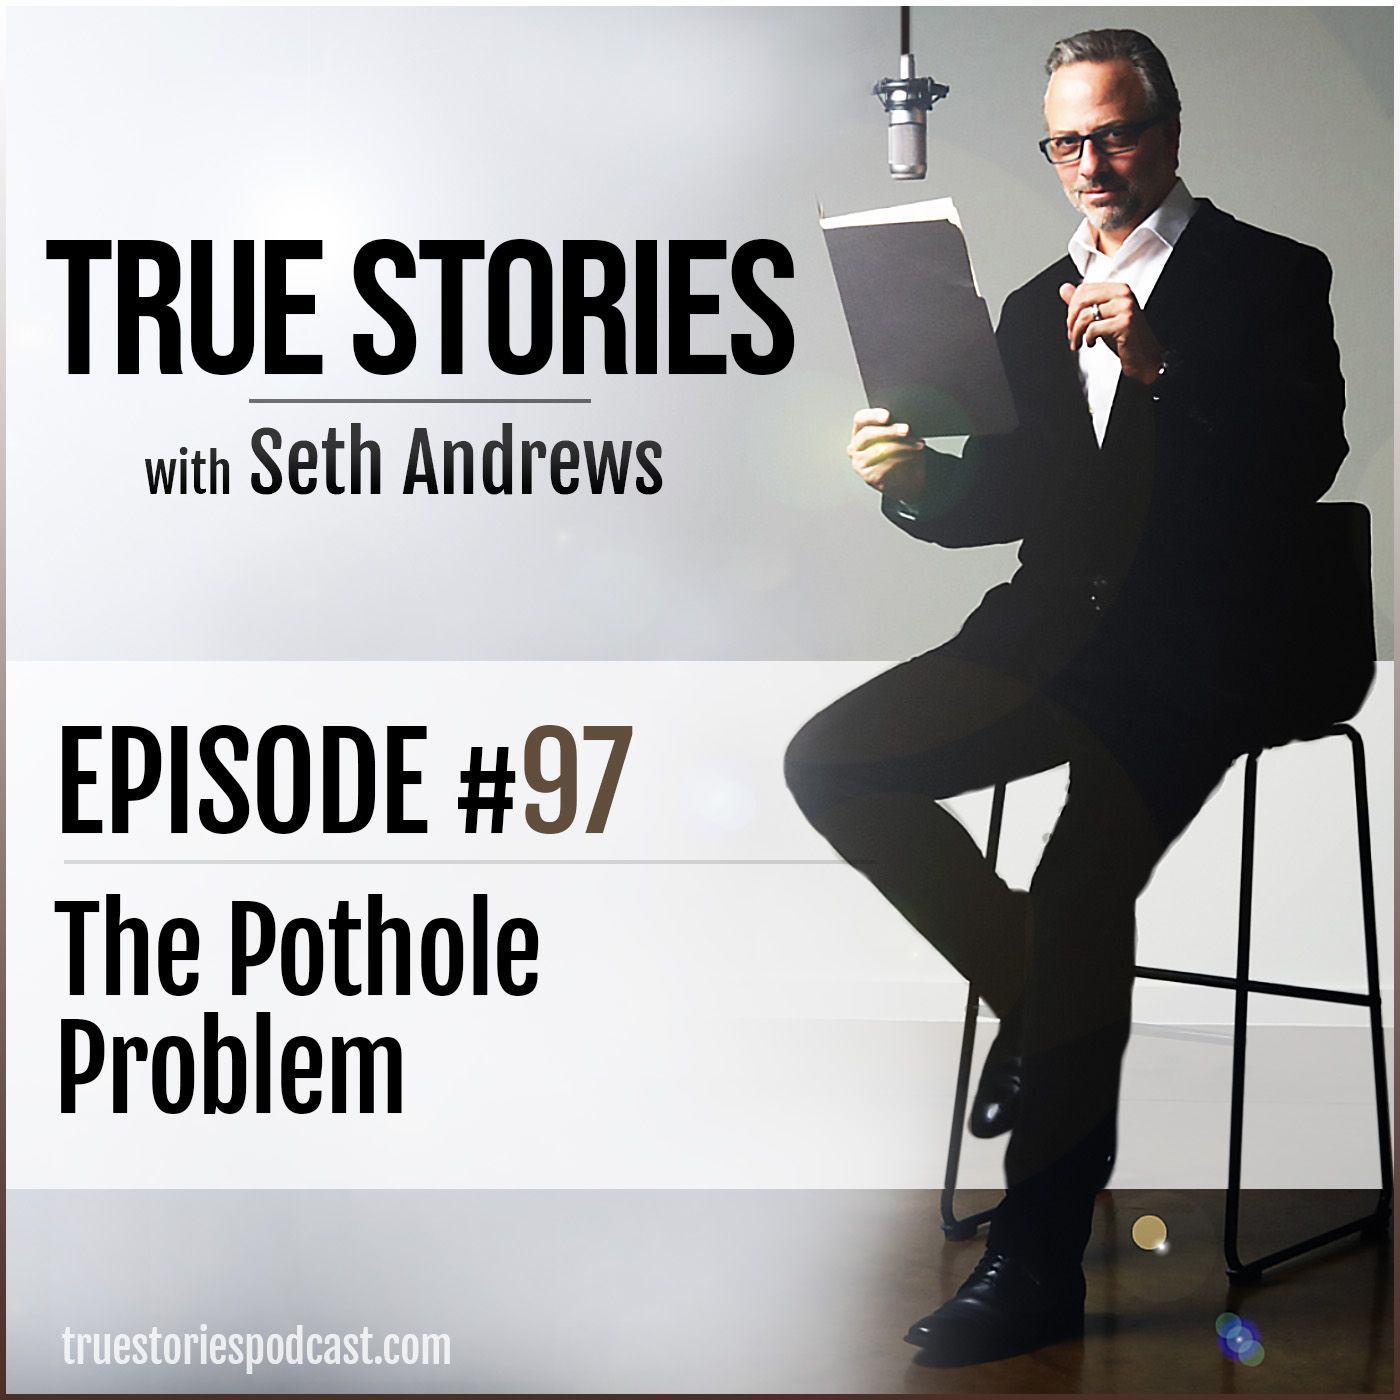 True Stories #97 - The Pothole Problem